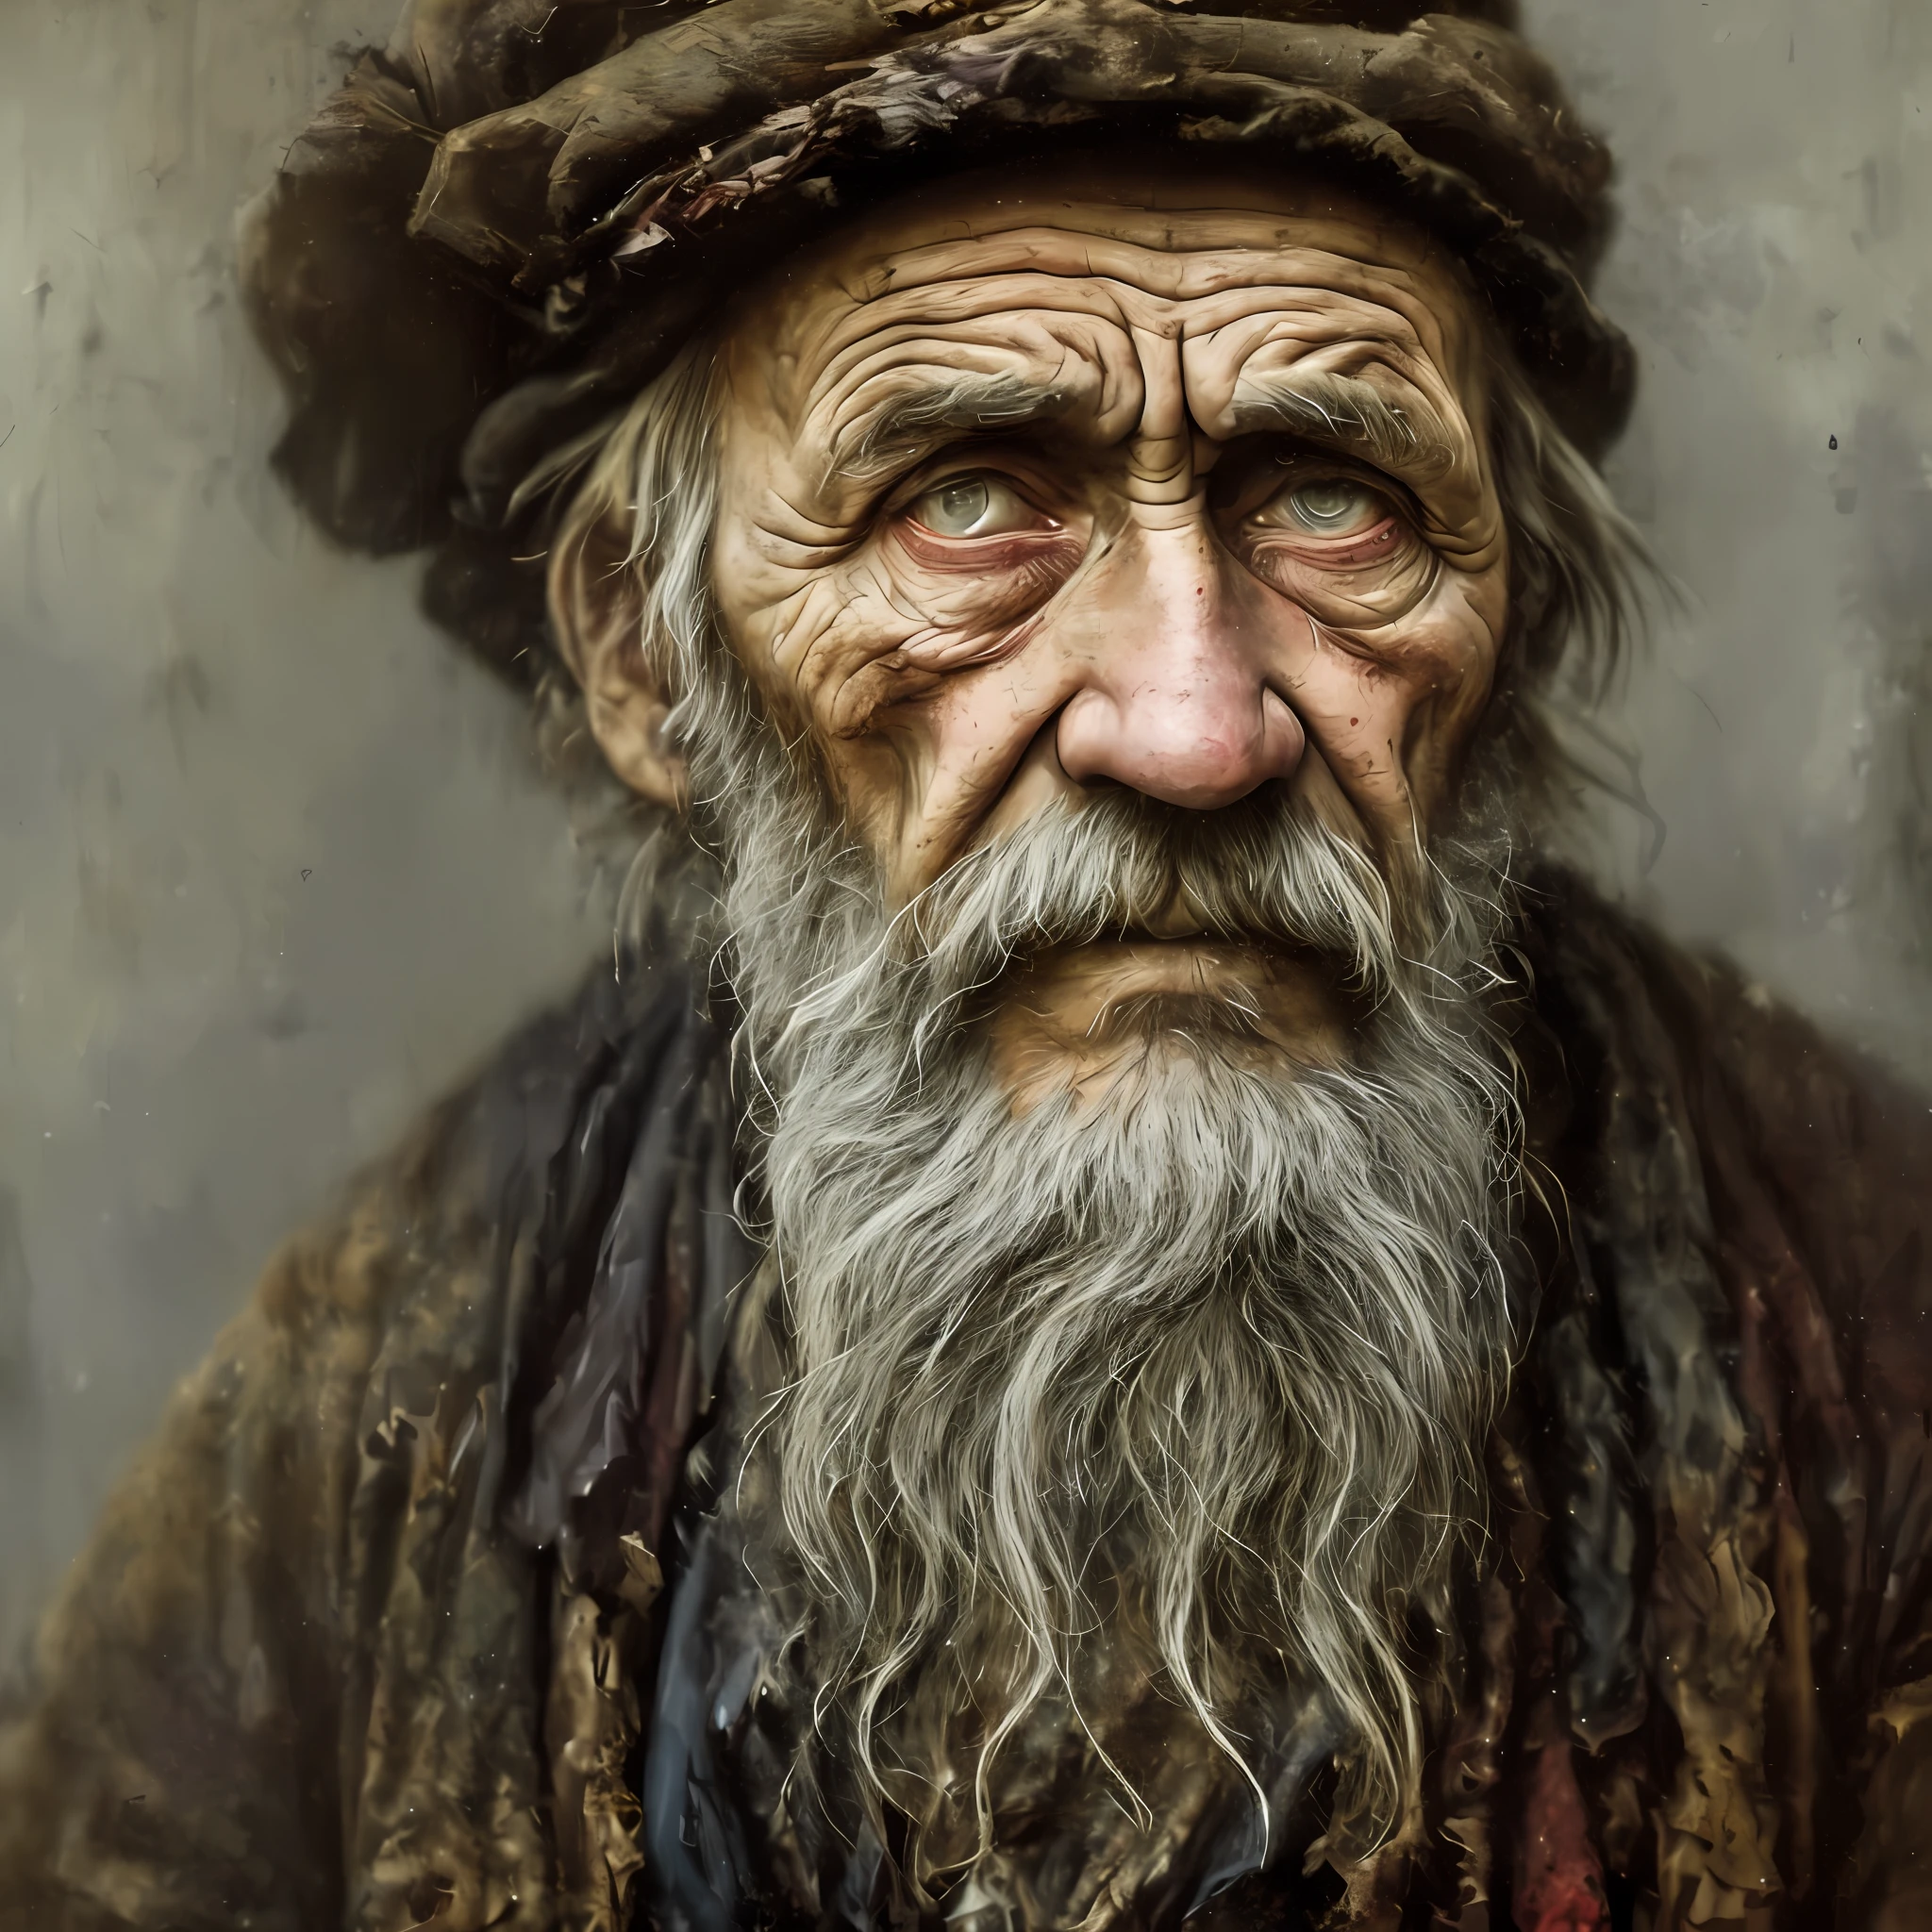 Un portrait d&#39;un pauvre ouvrier russe des années 1800 en haillons, ((fatigue accablante )), rides de l&#39;âge, art conceptuel, peinture au pastel à l&#39;huile , couleurs gris maussades , graveleux, style désordonné d&#39;Alexey Savrasov, Ivan Chichkine, Ilya Répine, (cel shader:1.2), 2D, (peinture à l&#39;huile:1.2) très détaillé